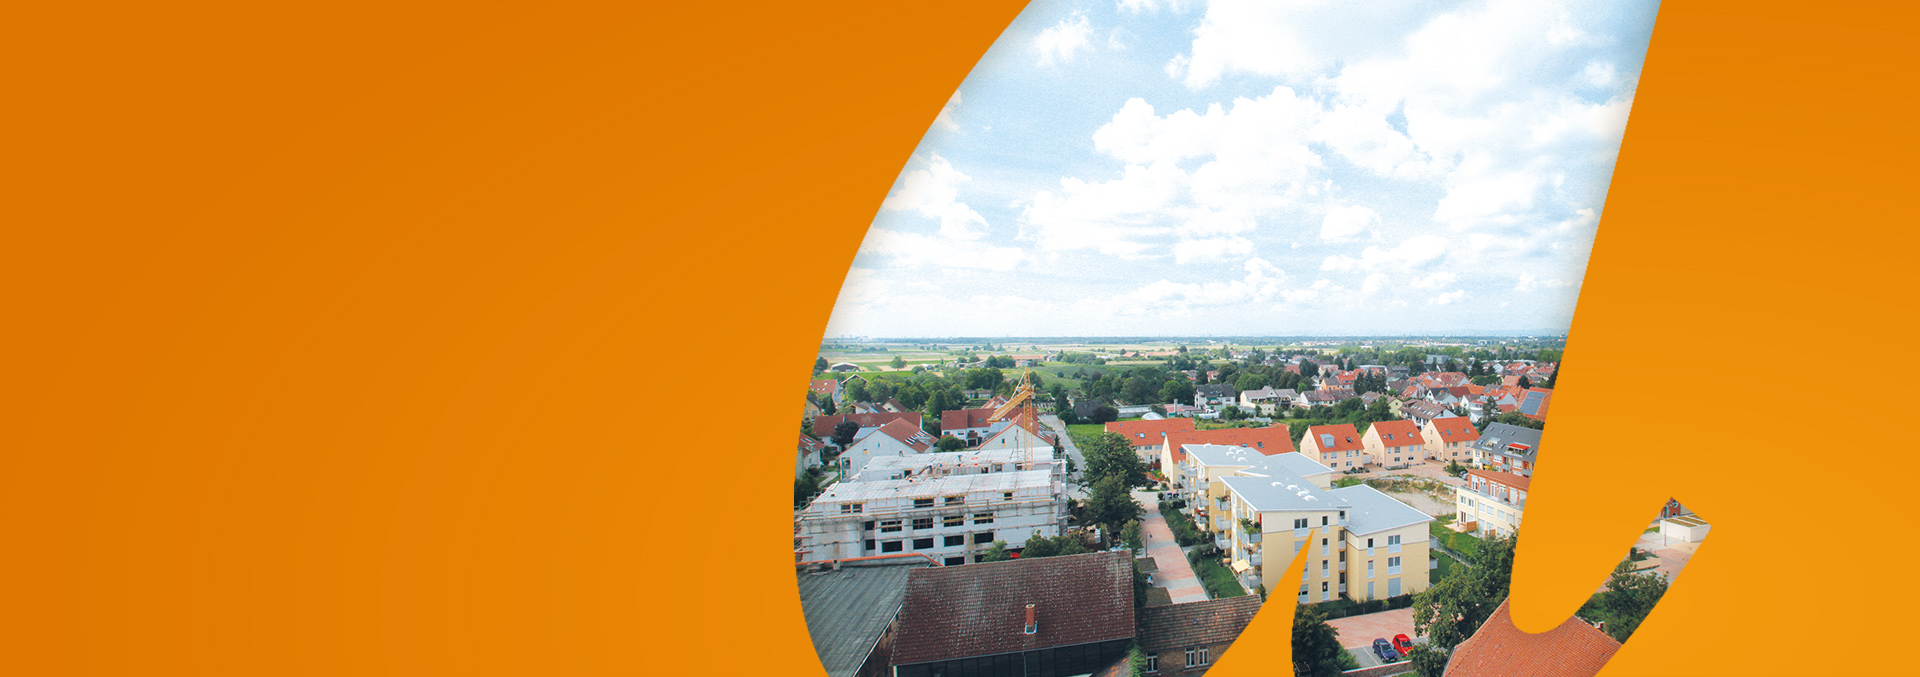 Services in Edingen-Neckarhausen: Panorama über die Dächer von Edingen unter blauem bewölktem Himmel